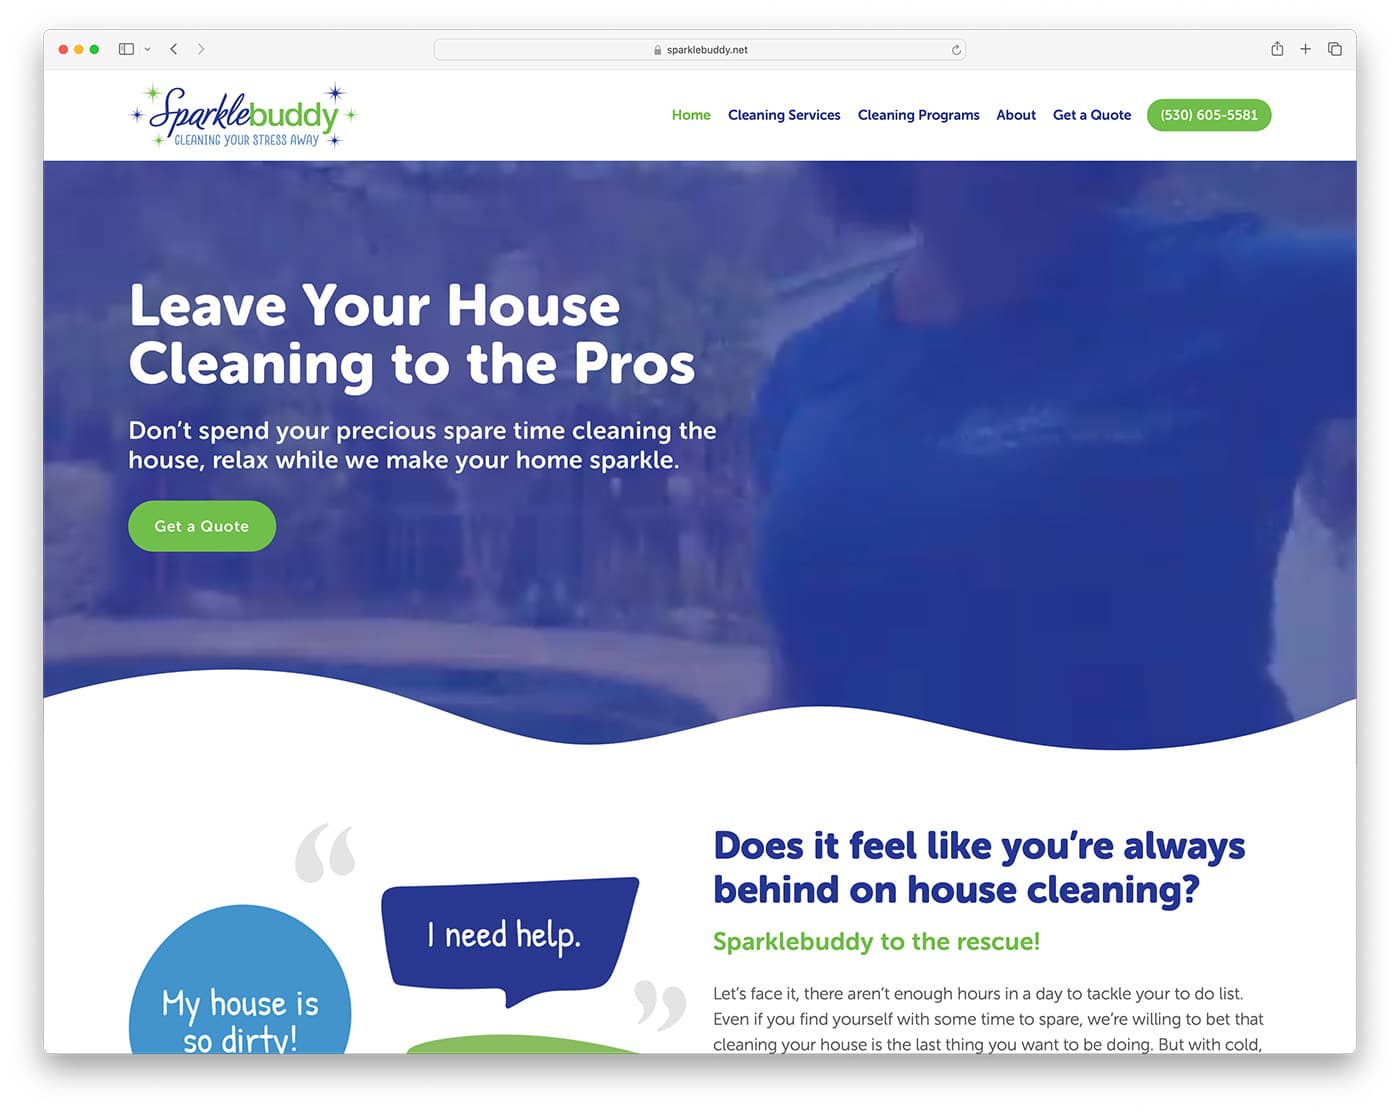 스파클 버디 - 집 청소 서비스 회사